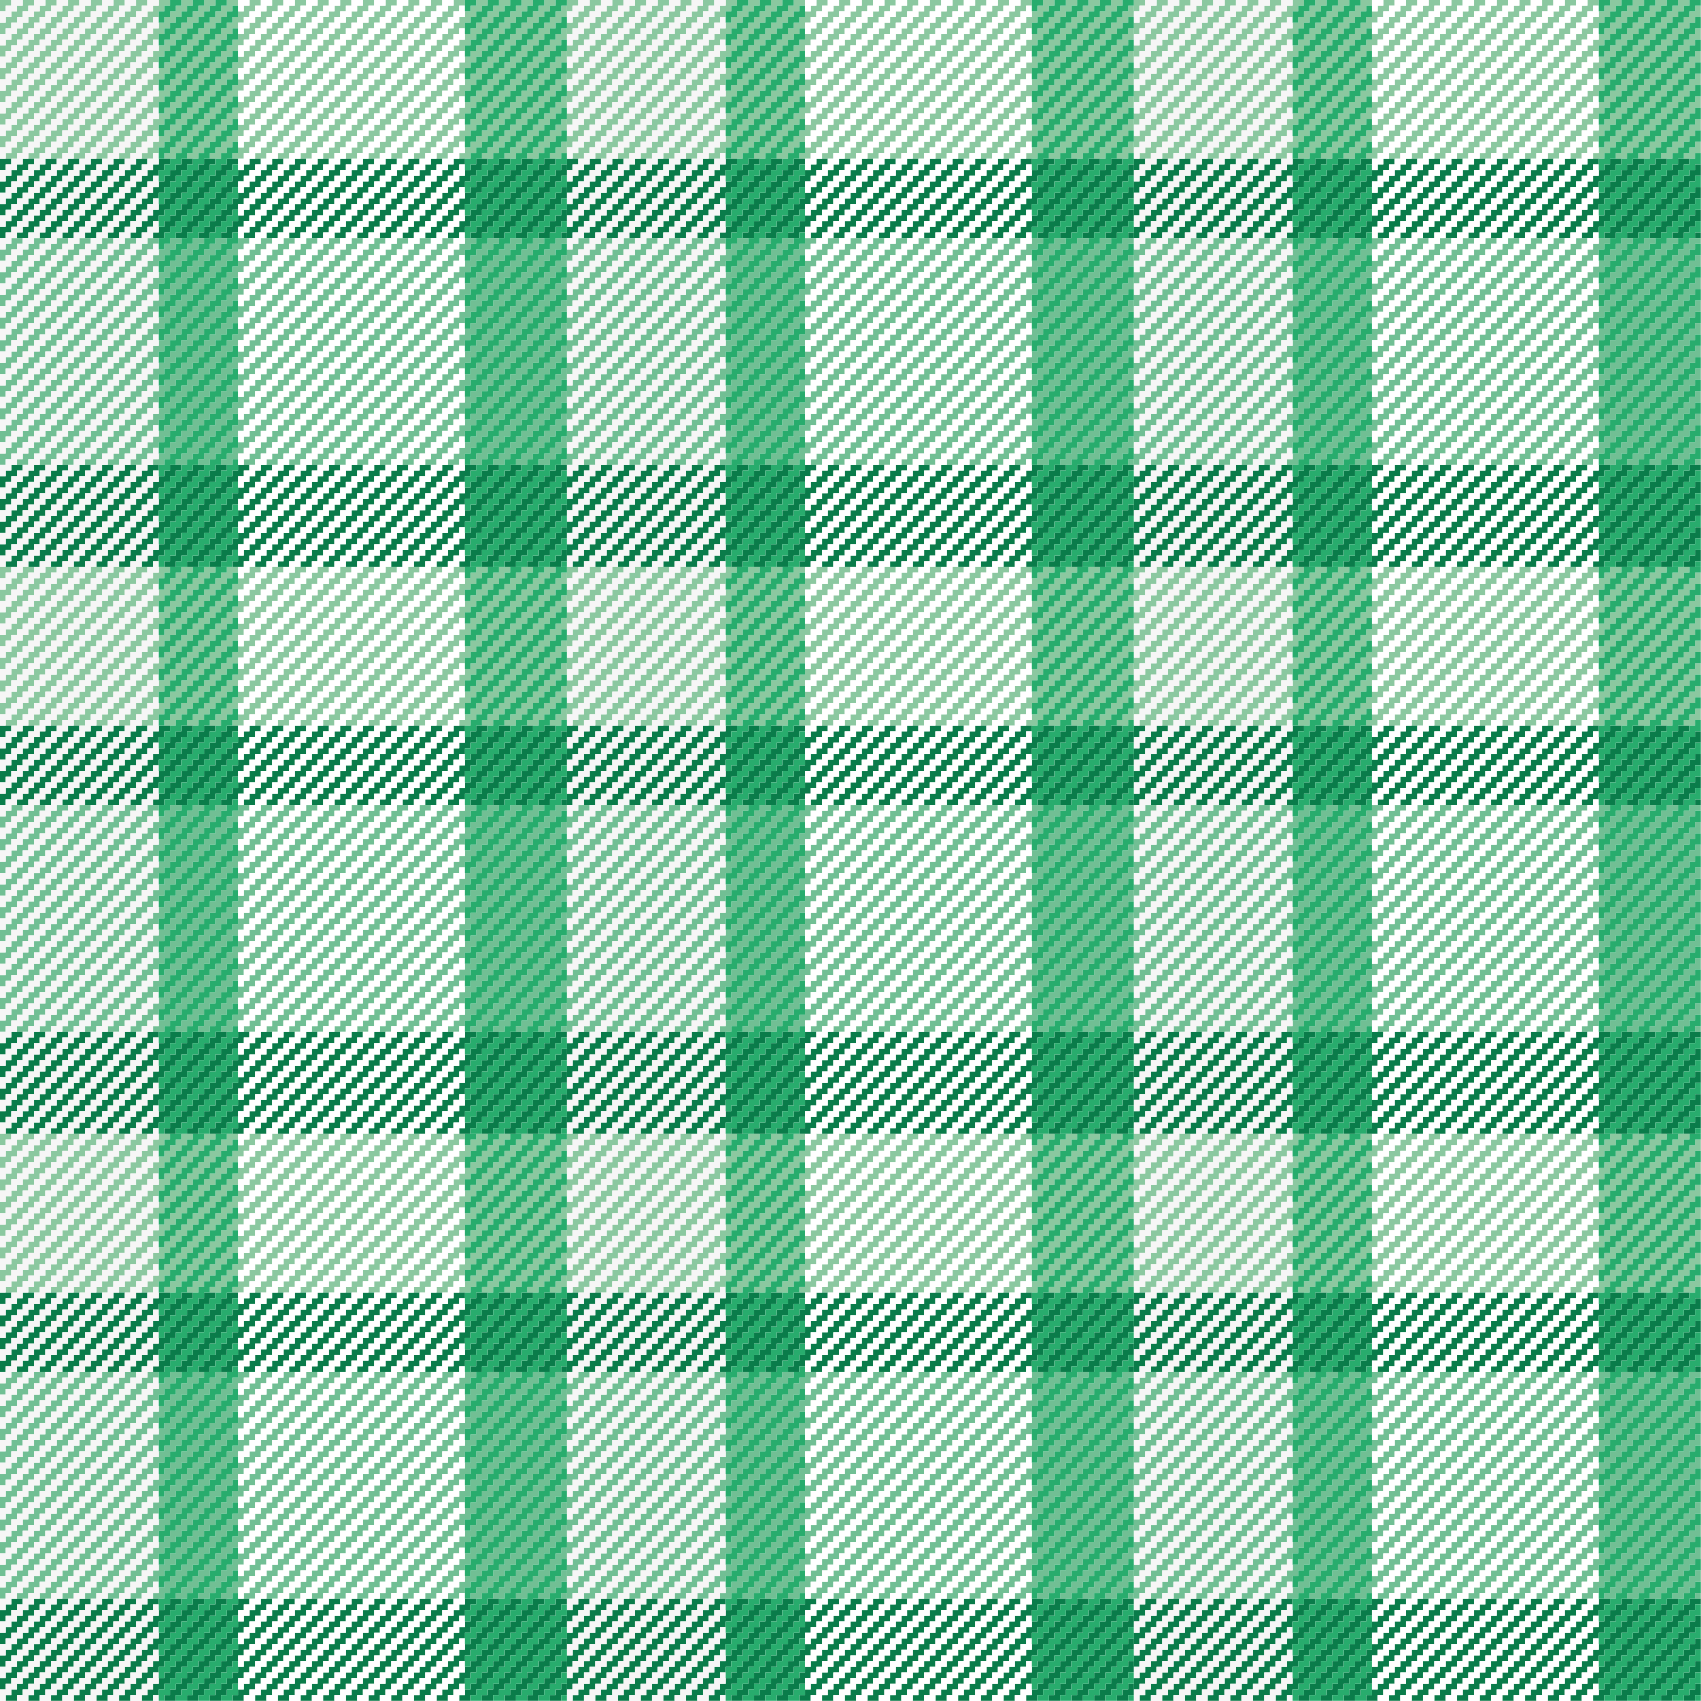 Tapete quadrado de padrão xadrez verde e branco - TenStickers